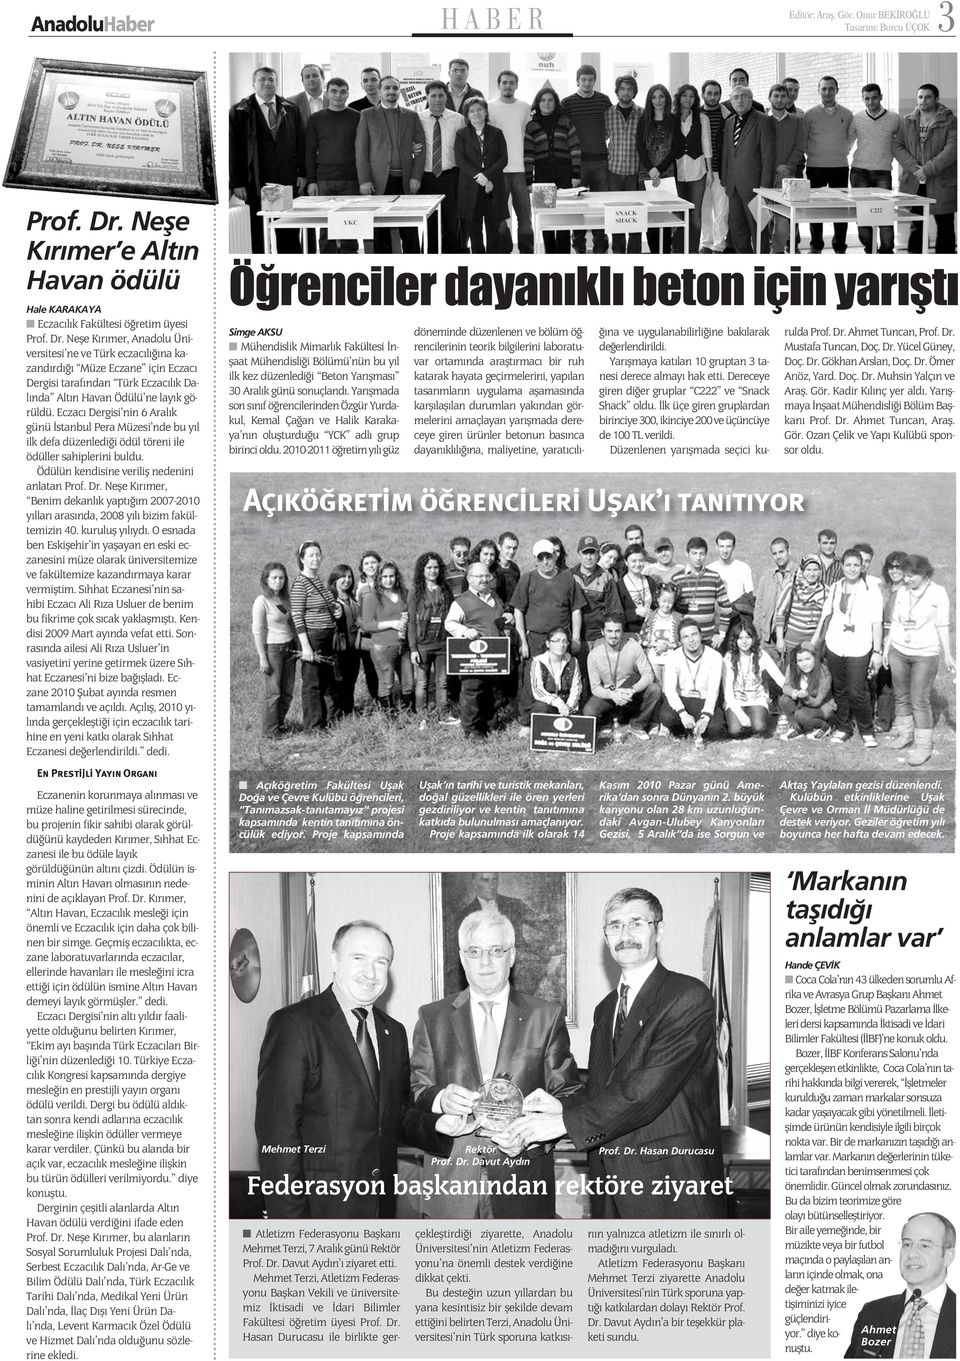 Eczane için Eczacı Dergisi tarafından Türk Eczacılık Dalında Altın Havan Ödülü ne layık görüldü.